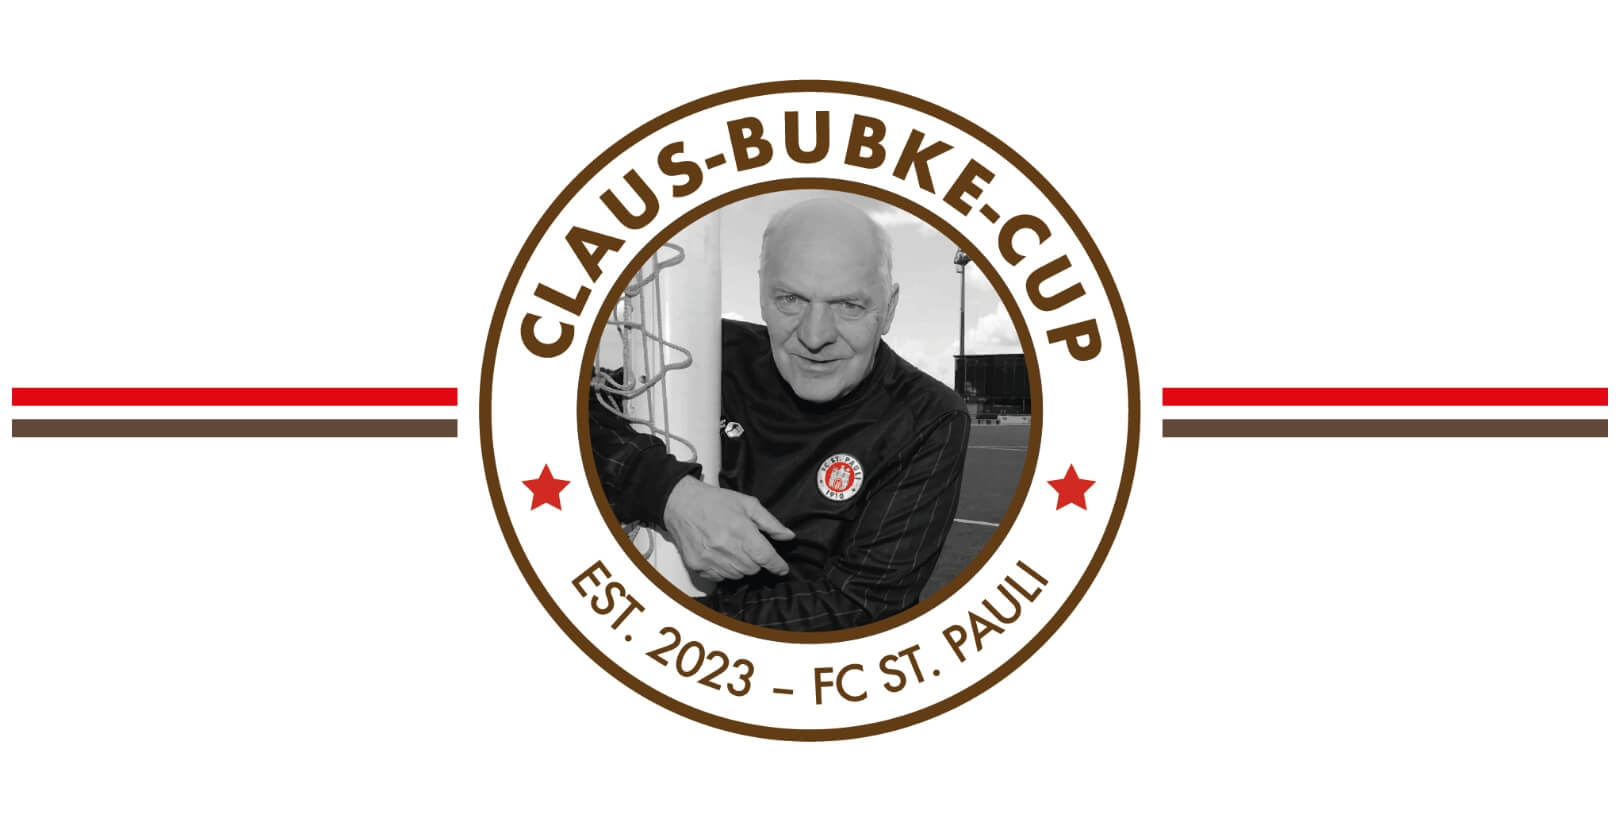 Logo des Claus-Bubke-Cup auf weißem Hintergrund, hinterlegt mit einem braunen und einem roten Streifen.